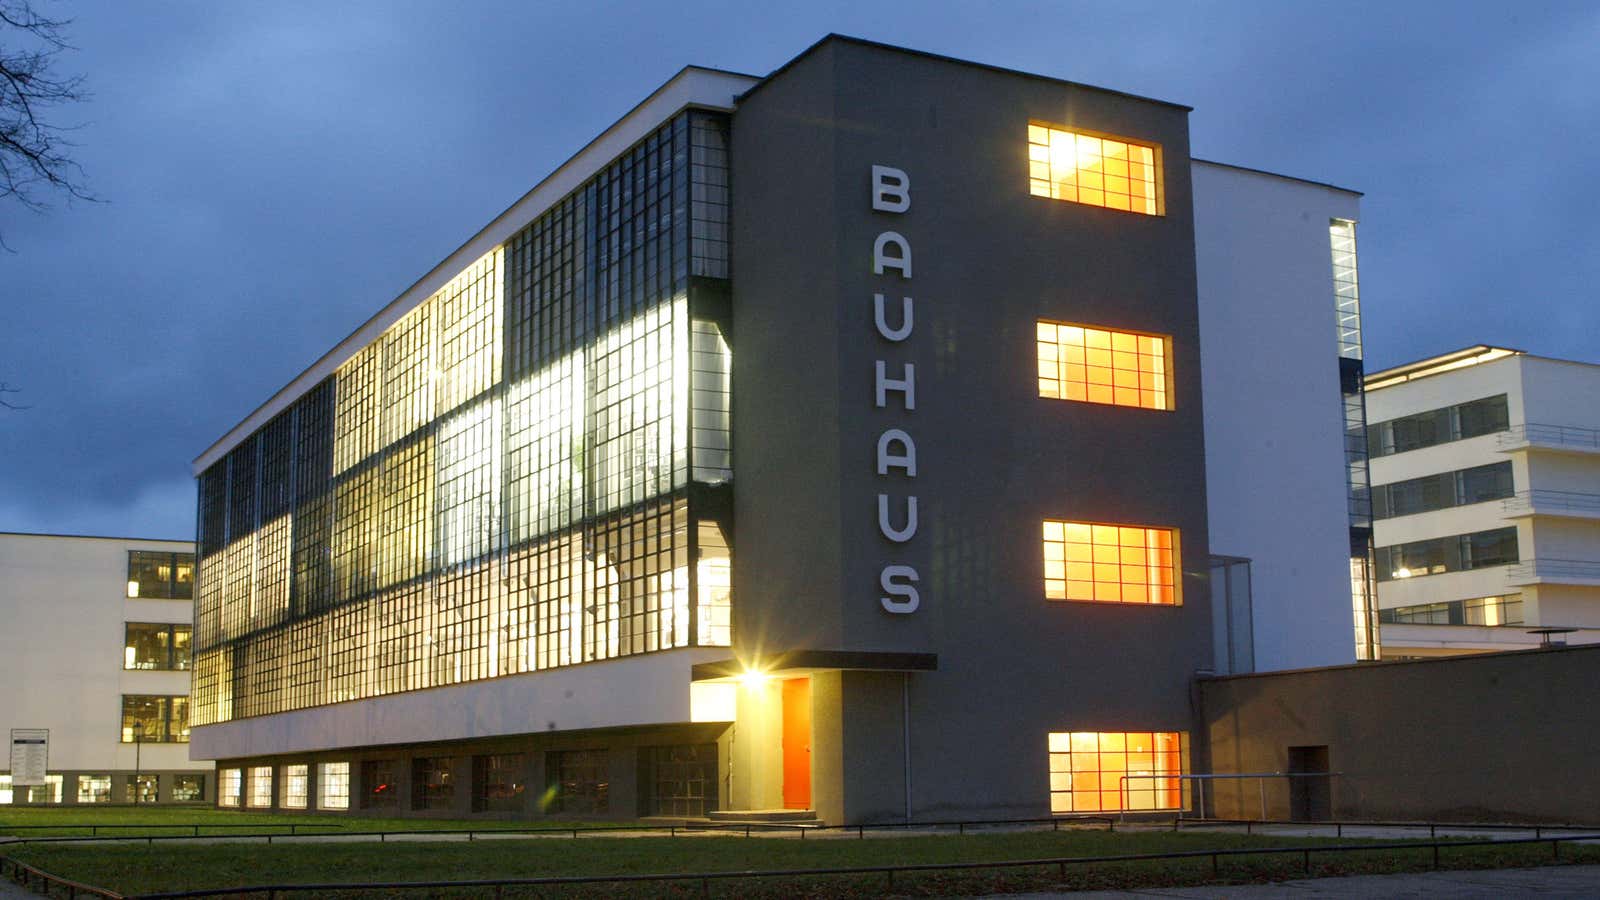 Bauhaus in Dessau.